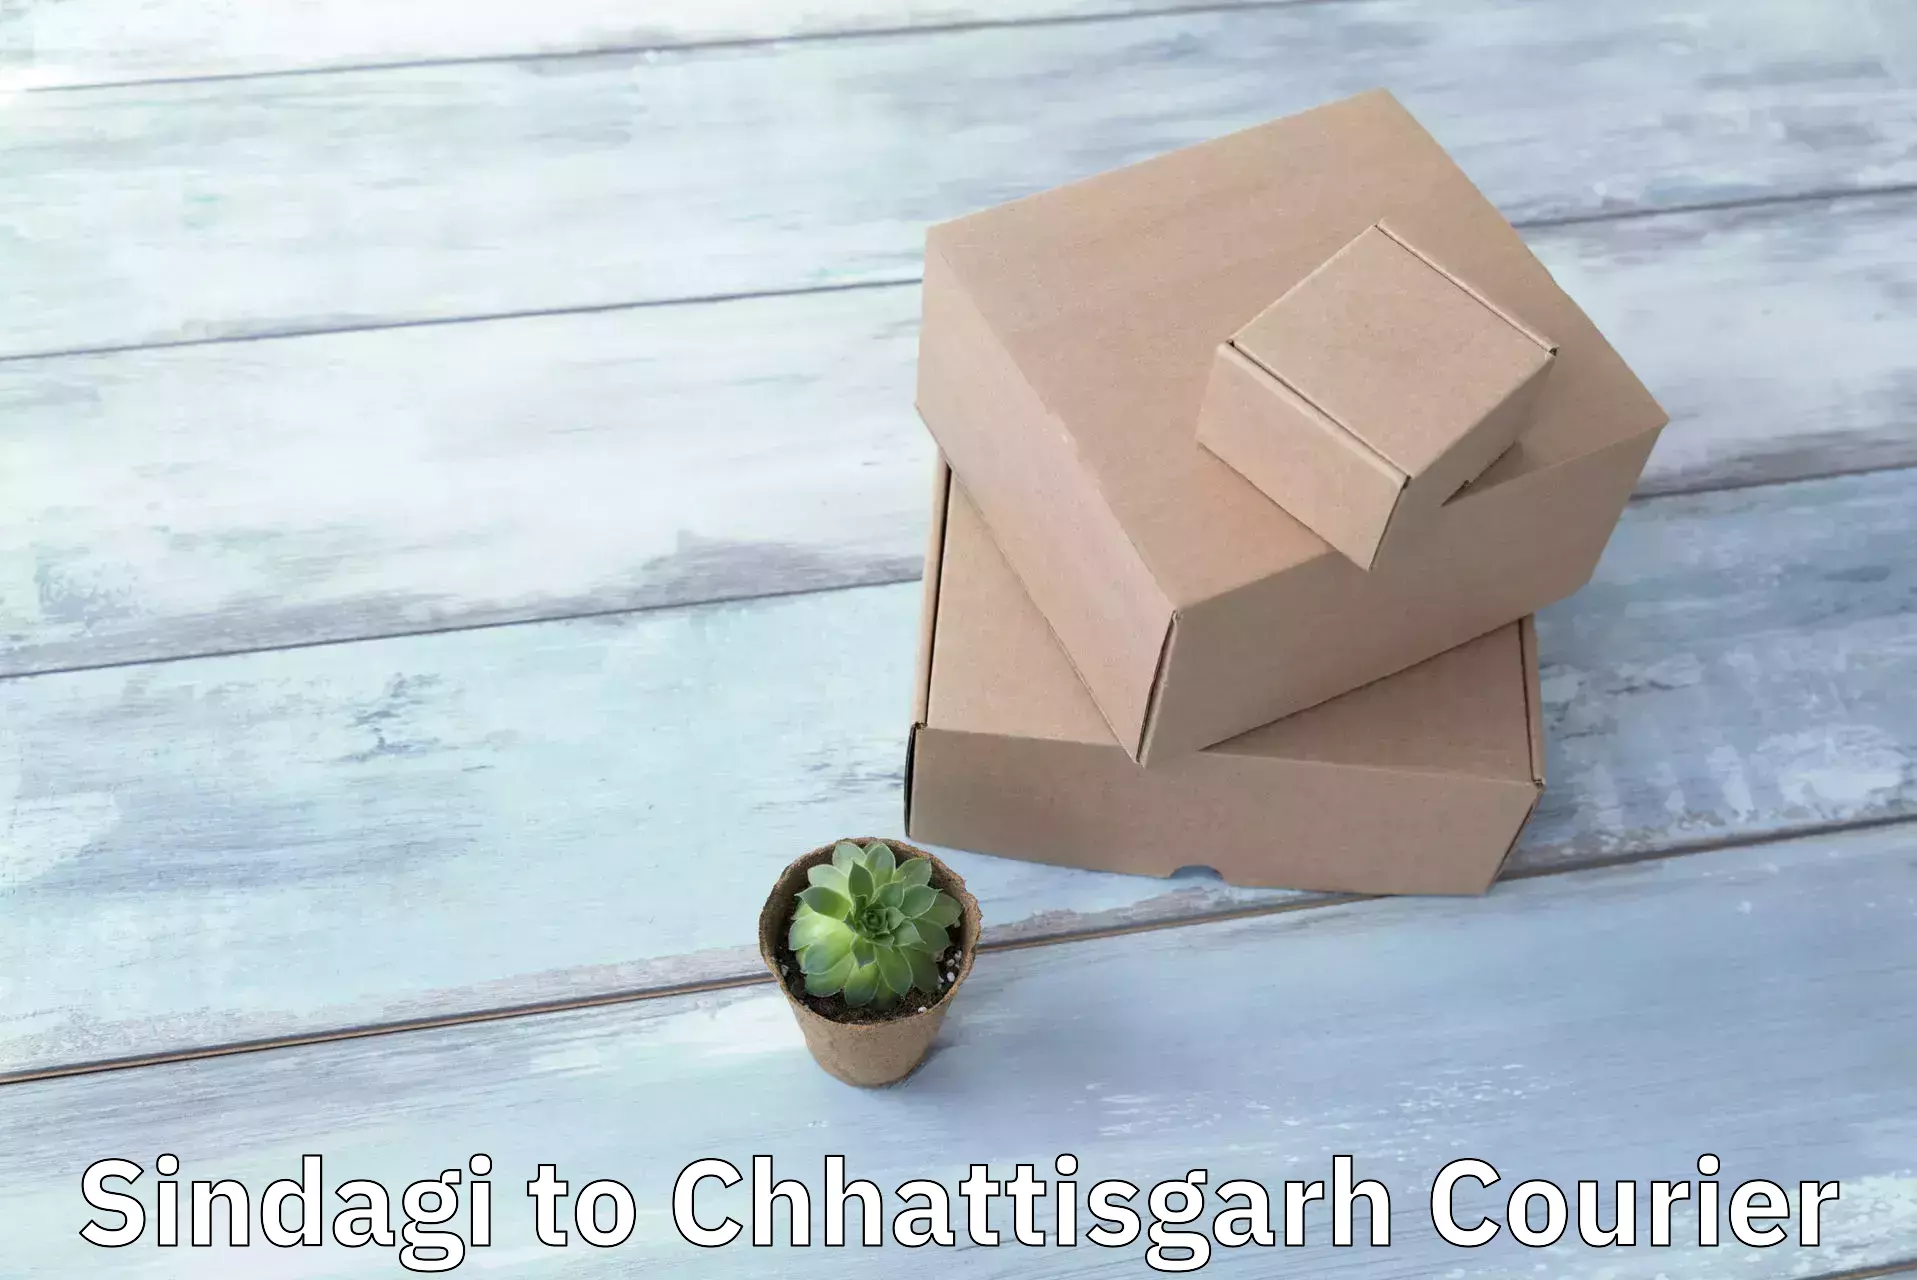 Reliable courier service Sindagi to Chhattisgarh